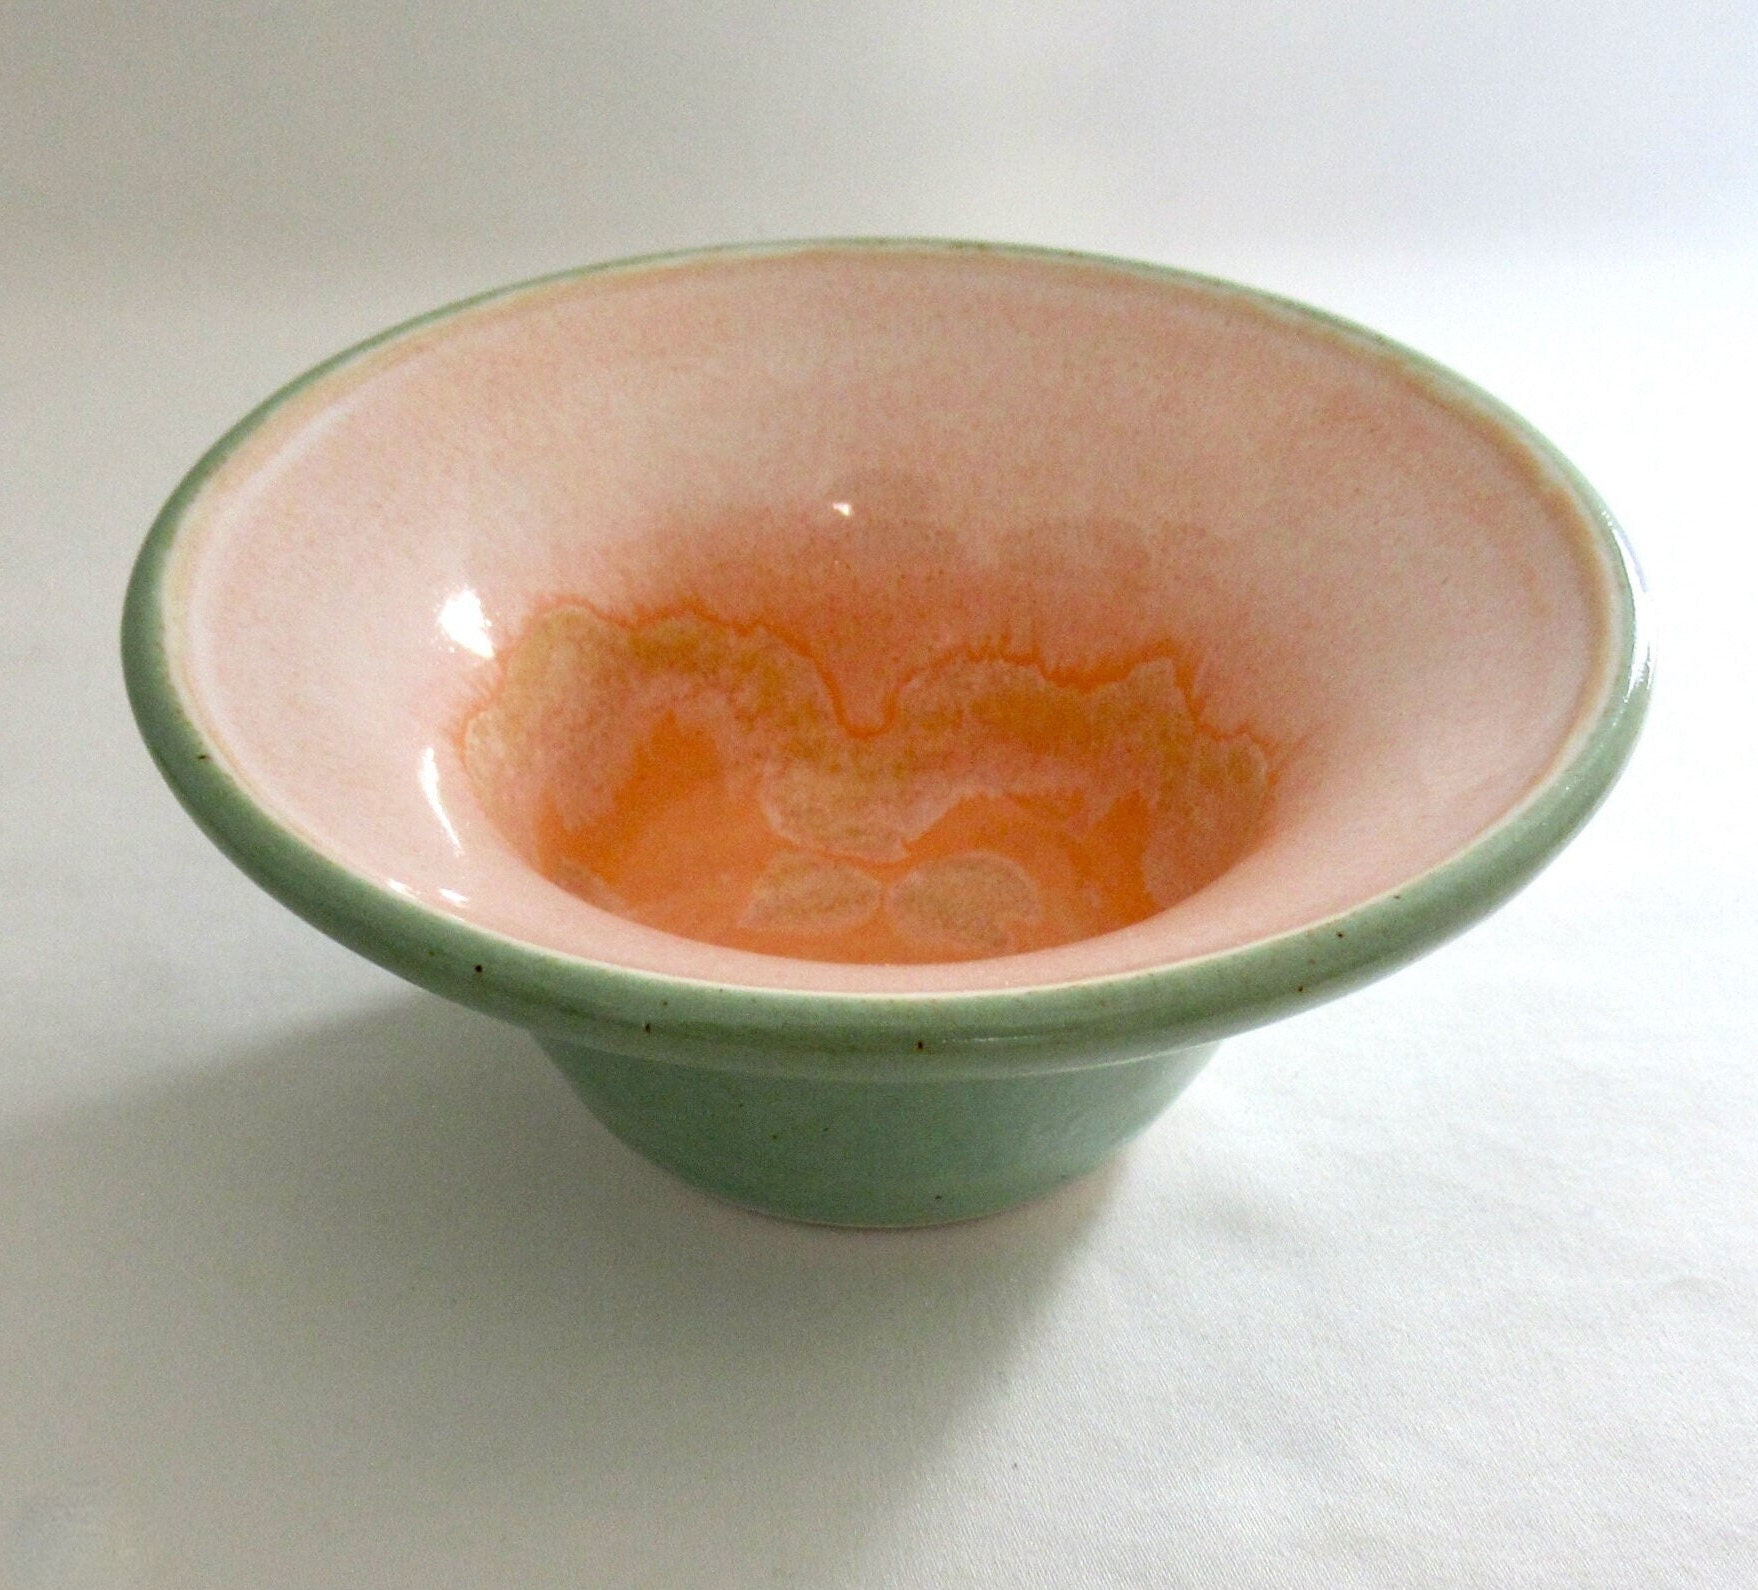 7.5 inch Salad Bowls, 24 oz Ceramic Serving Bowls with Handle, Japanese Irregular Shape Serving Colorful Bowls Set for Salad, Pasta,Soup,Ramen,Popcorn